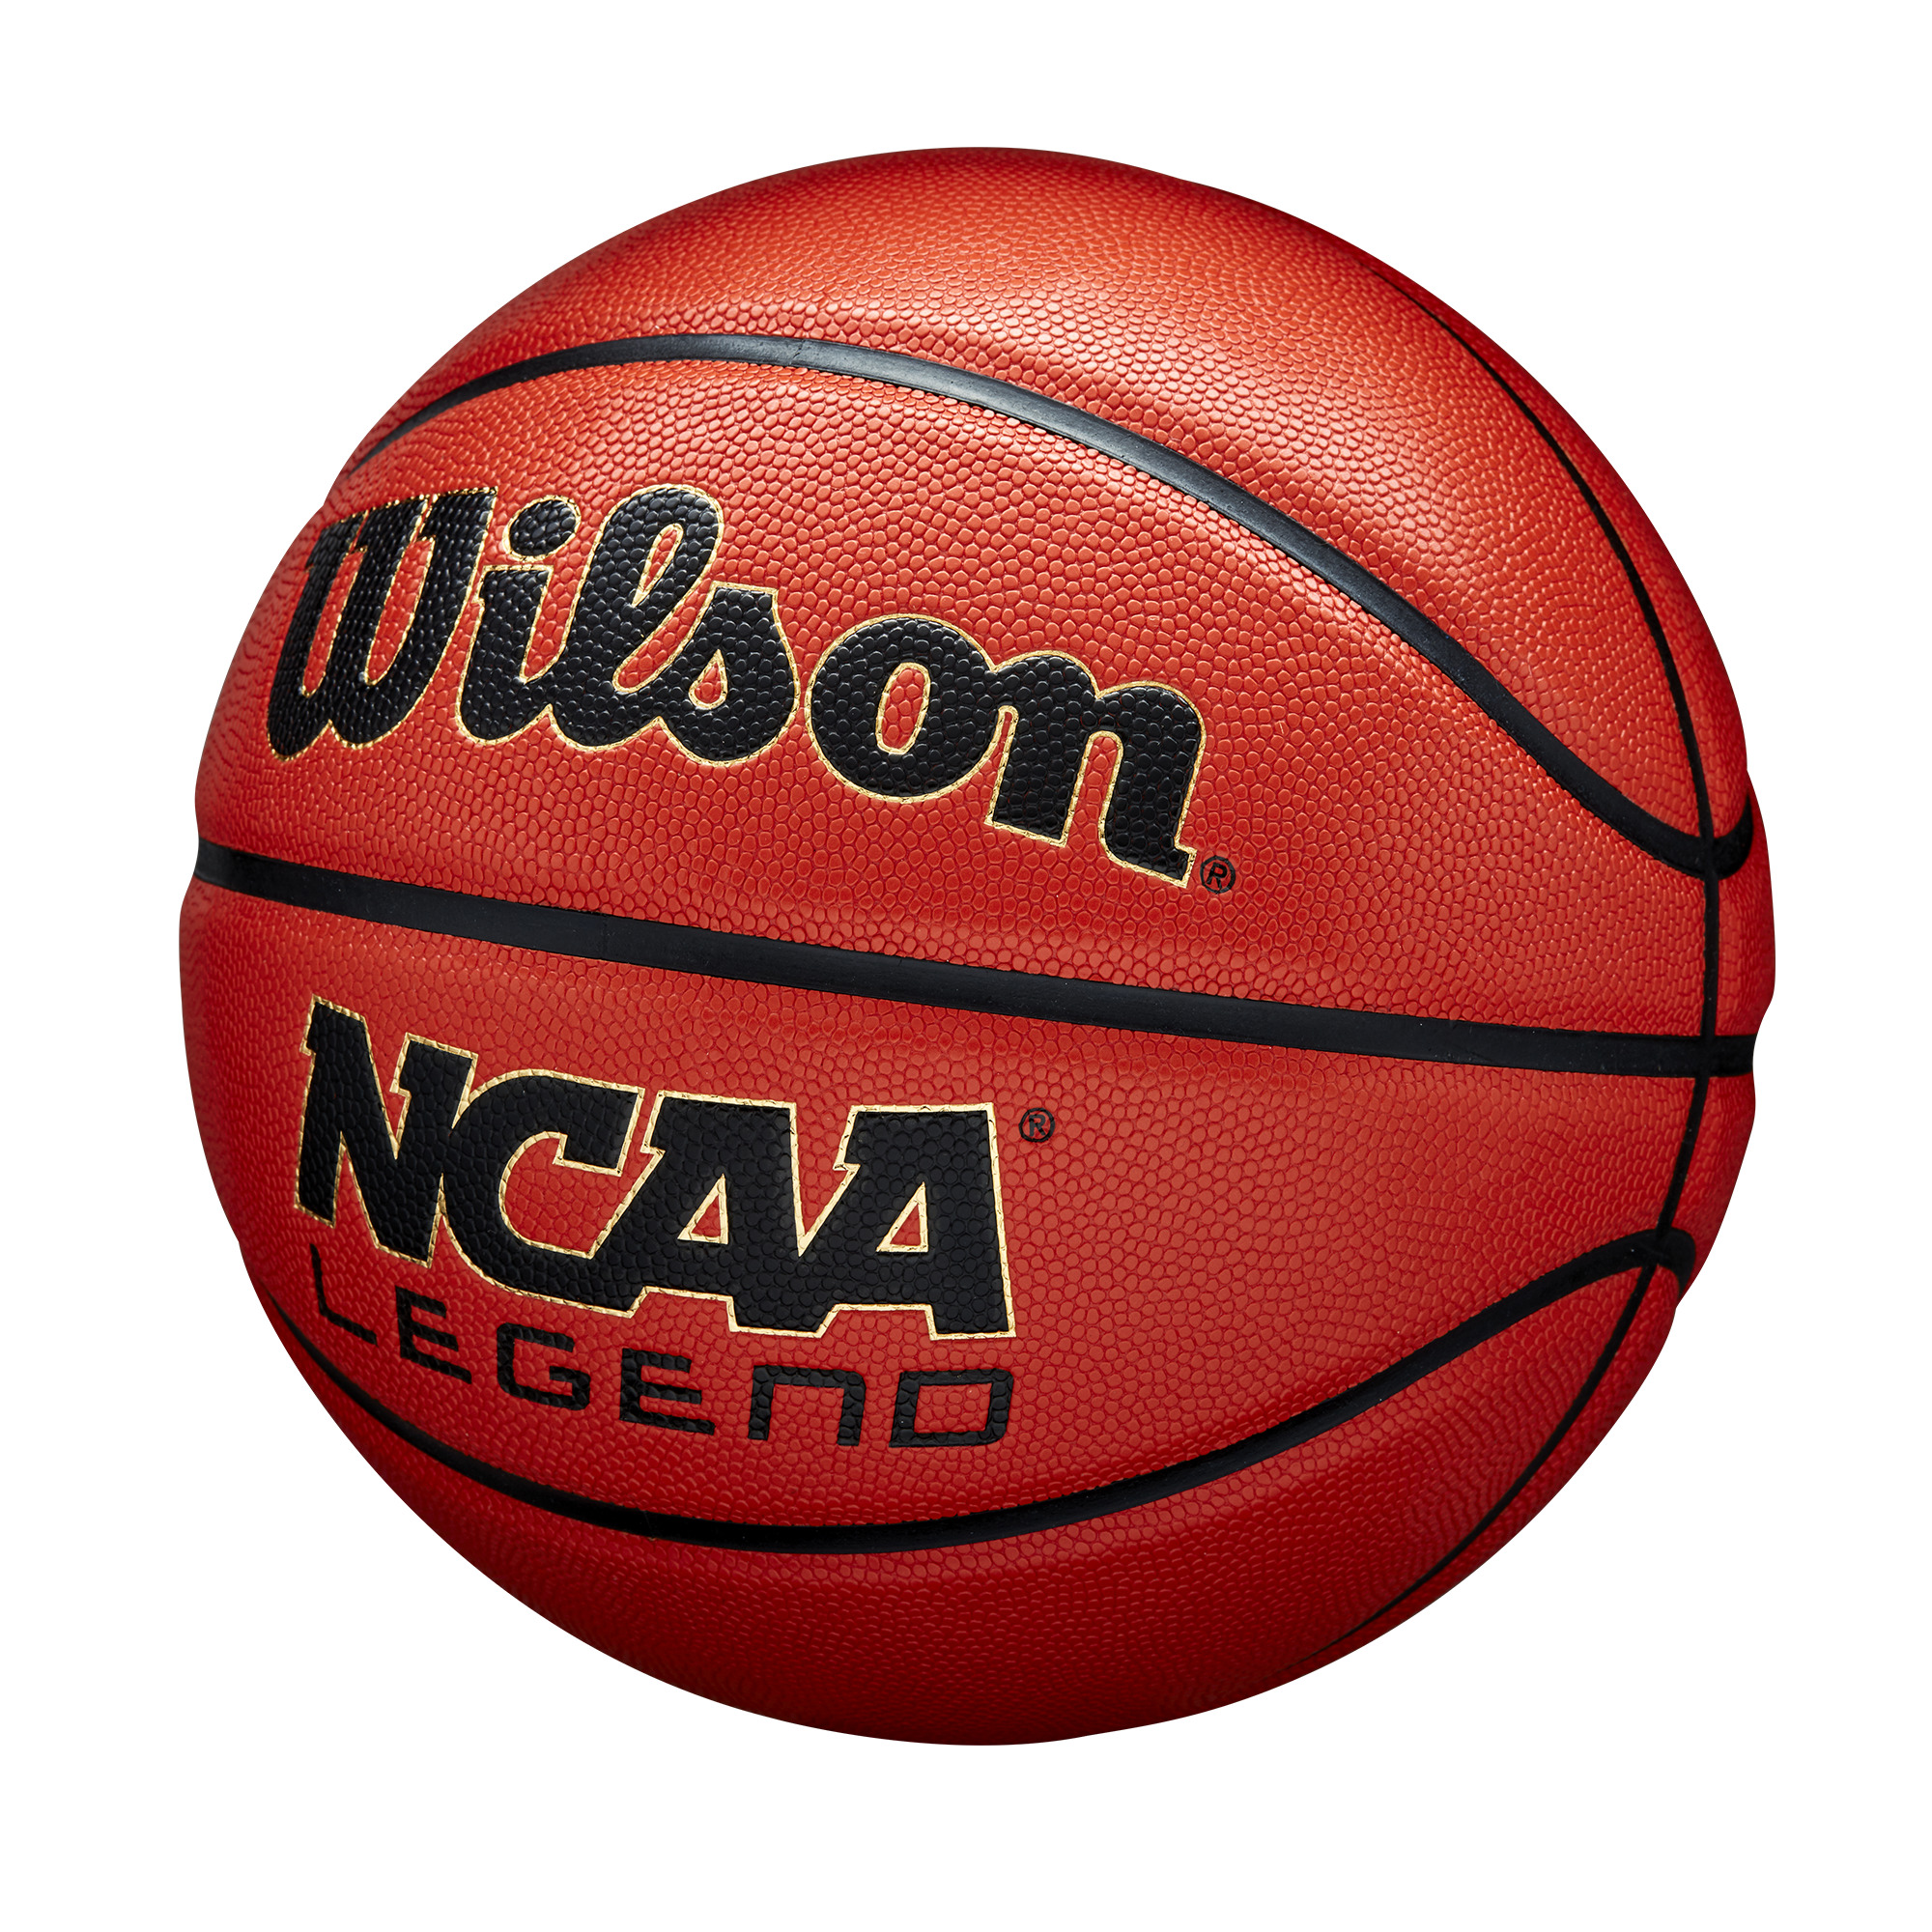 Ballons de basket NCAA Legend